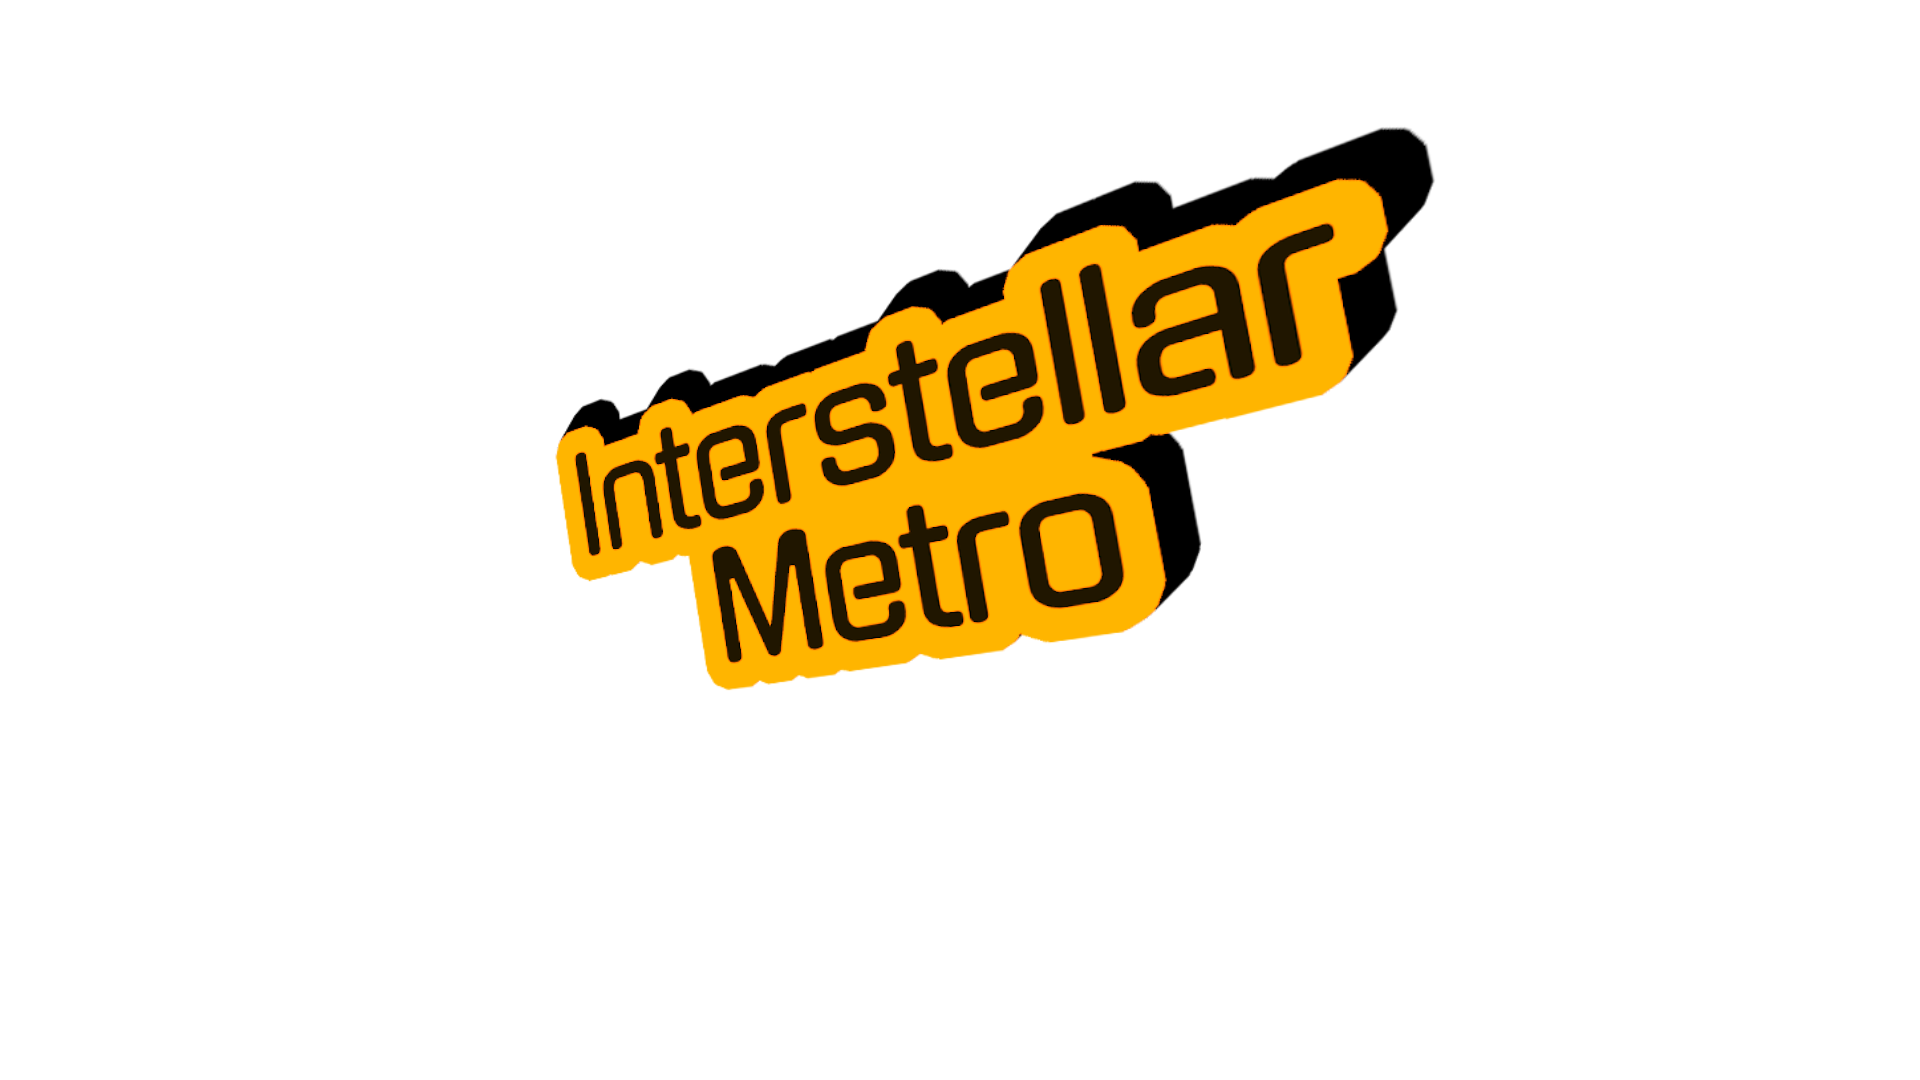 Interstellar Metro MVP Version